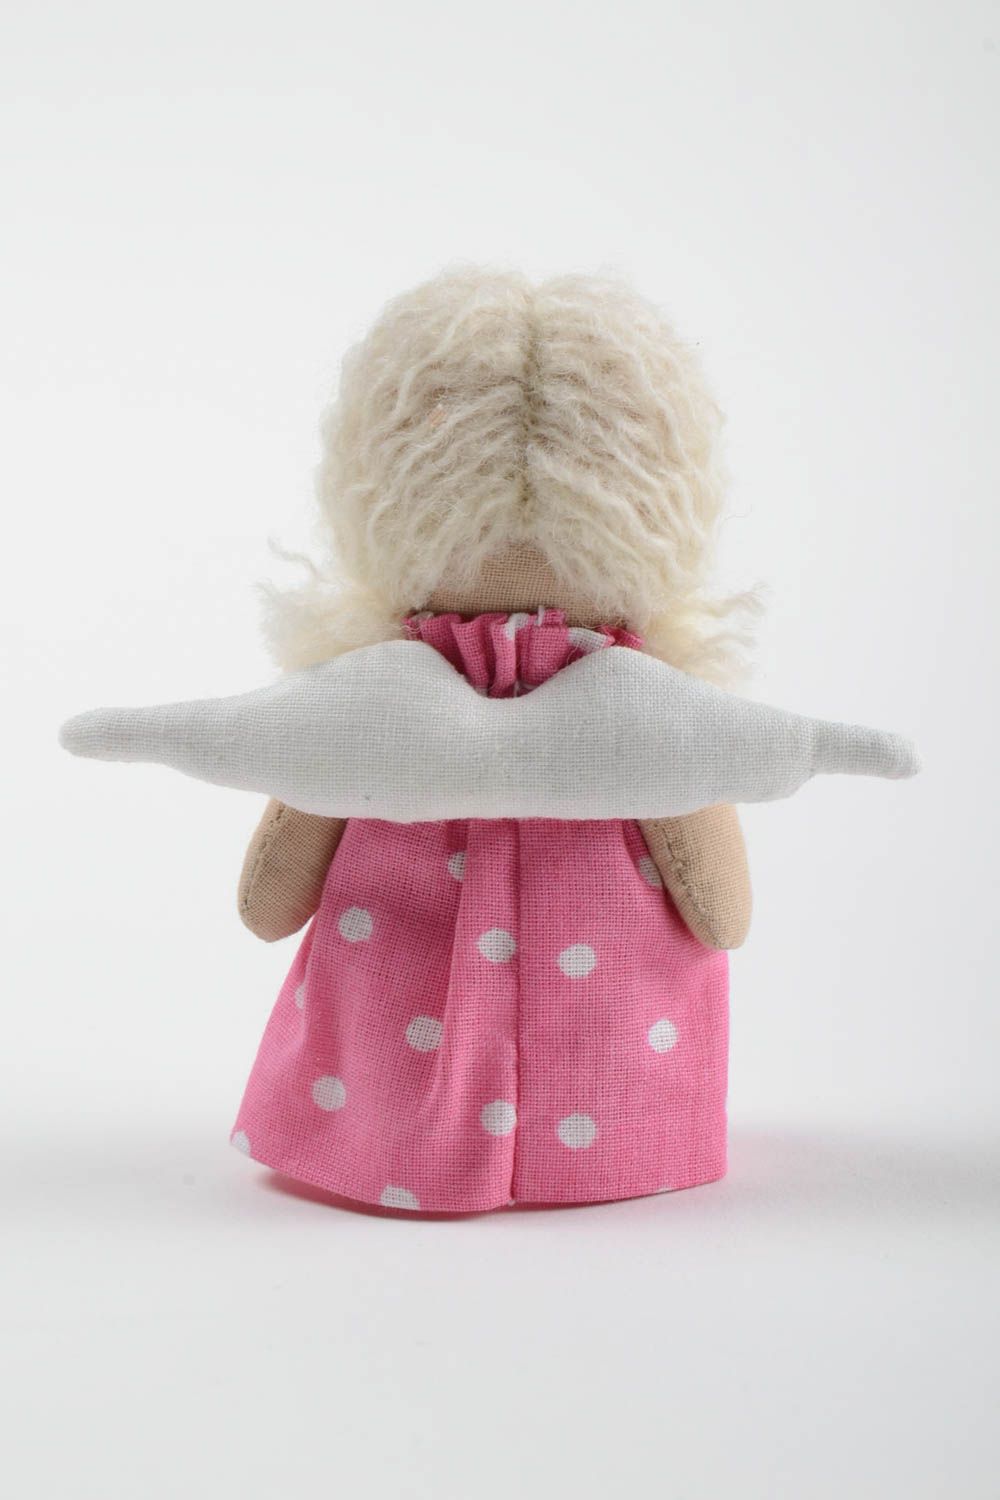 Авторская тканевая кукла маленькая в розовом платье из хлопка ручной работы фото 3